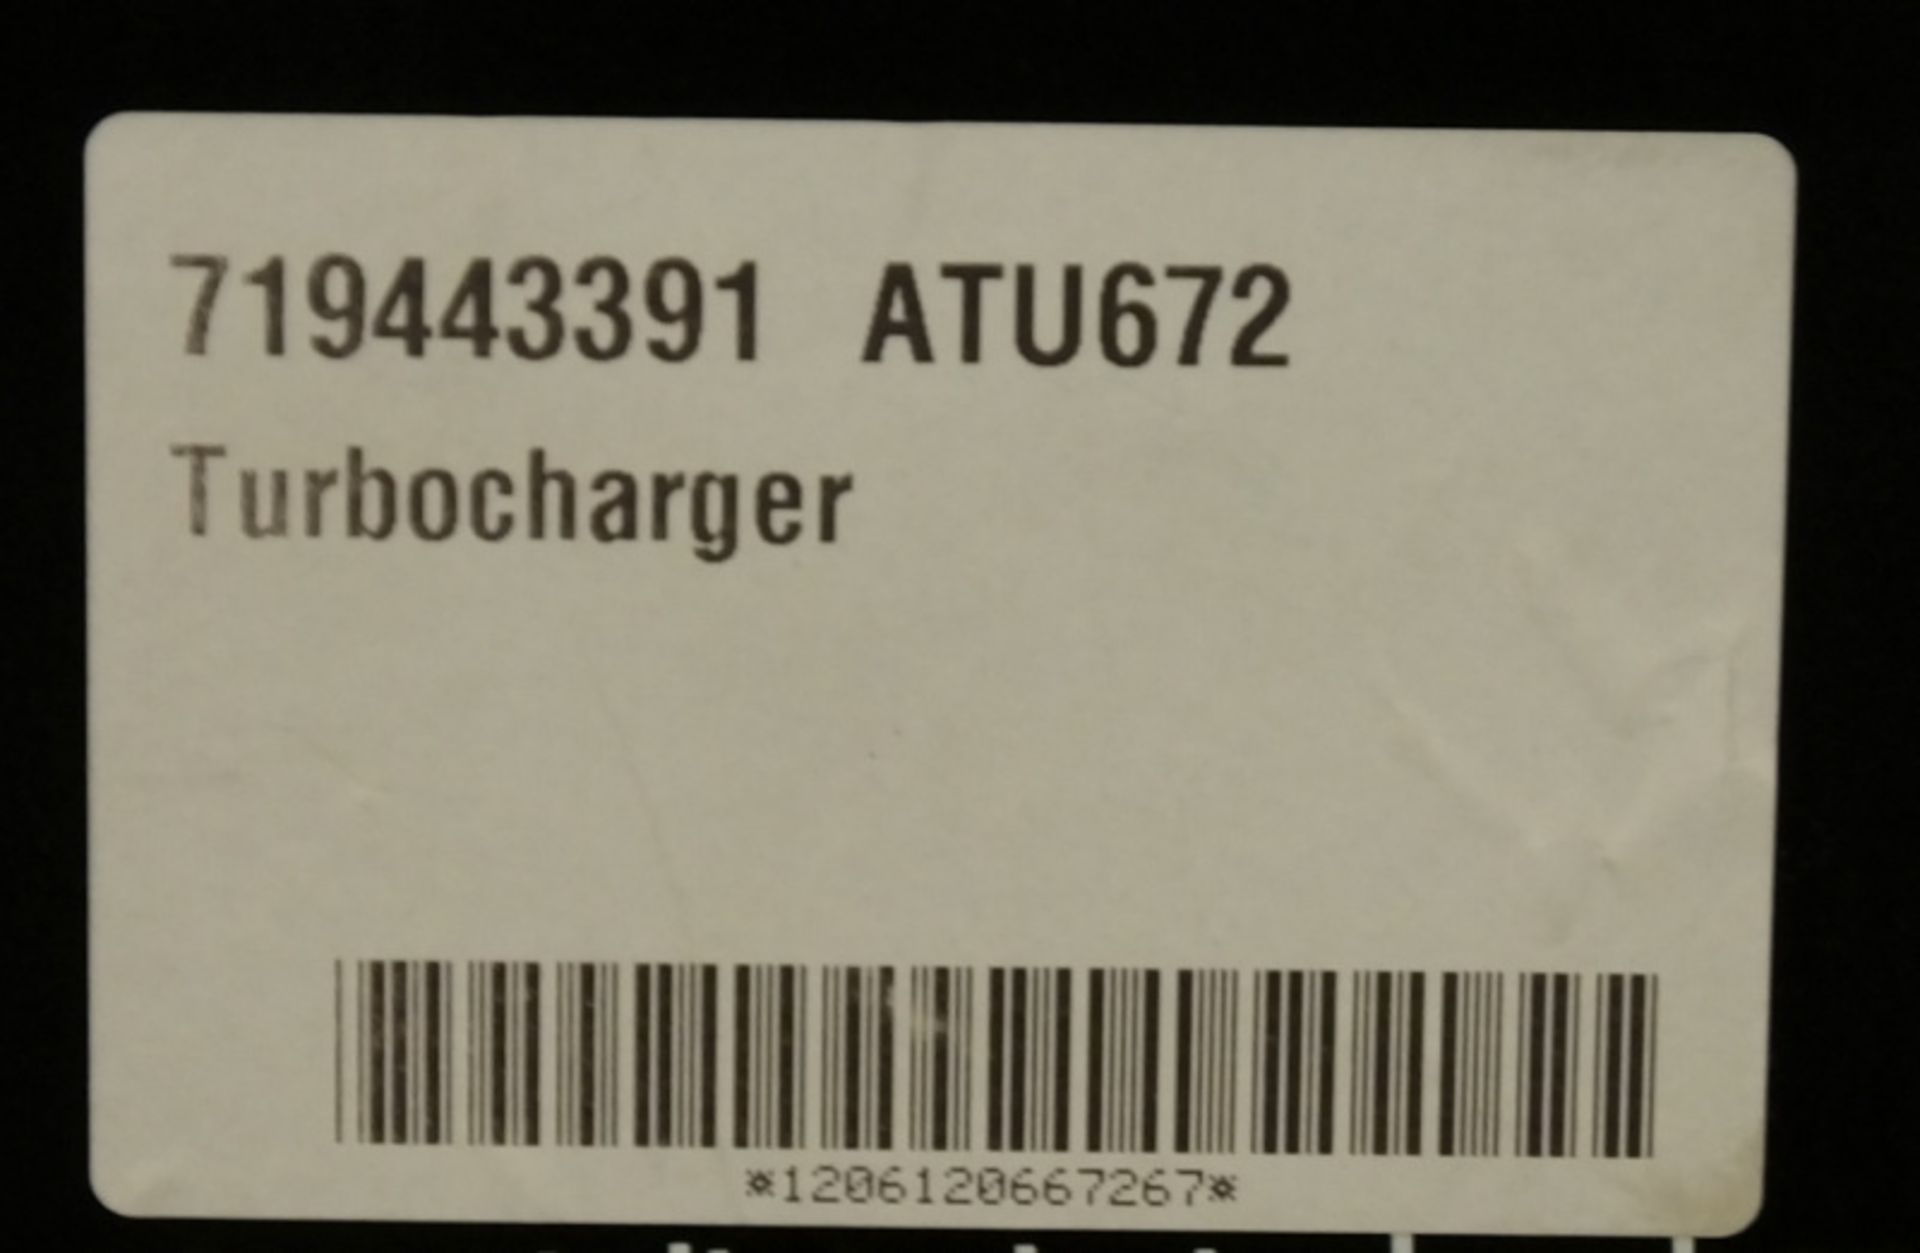 Autocharge Turbocharger - model ATU672 - Image 2 of 3